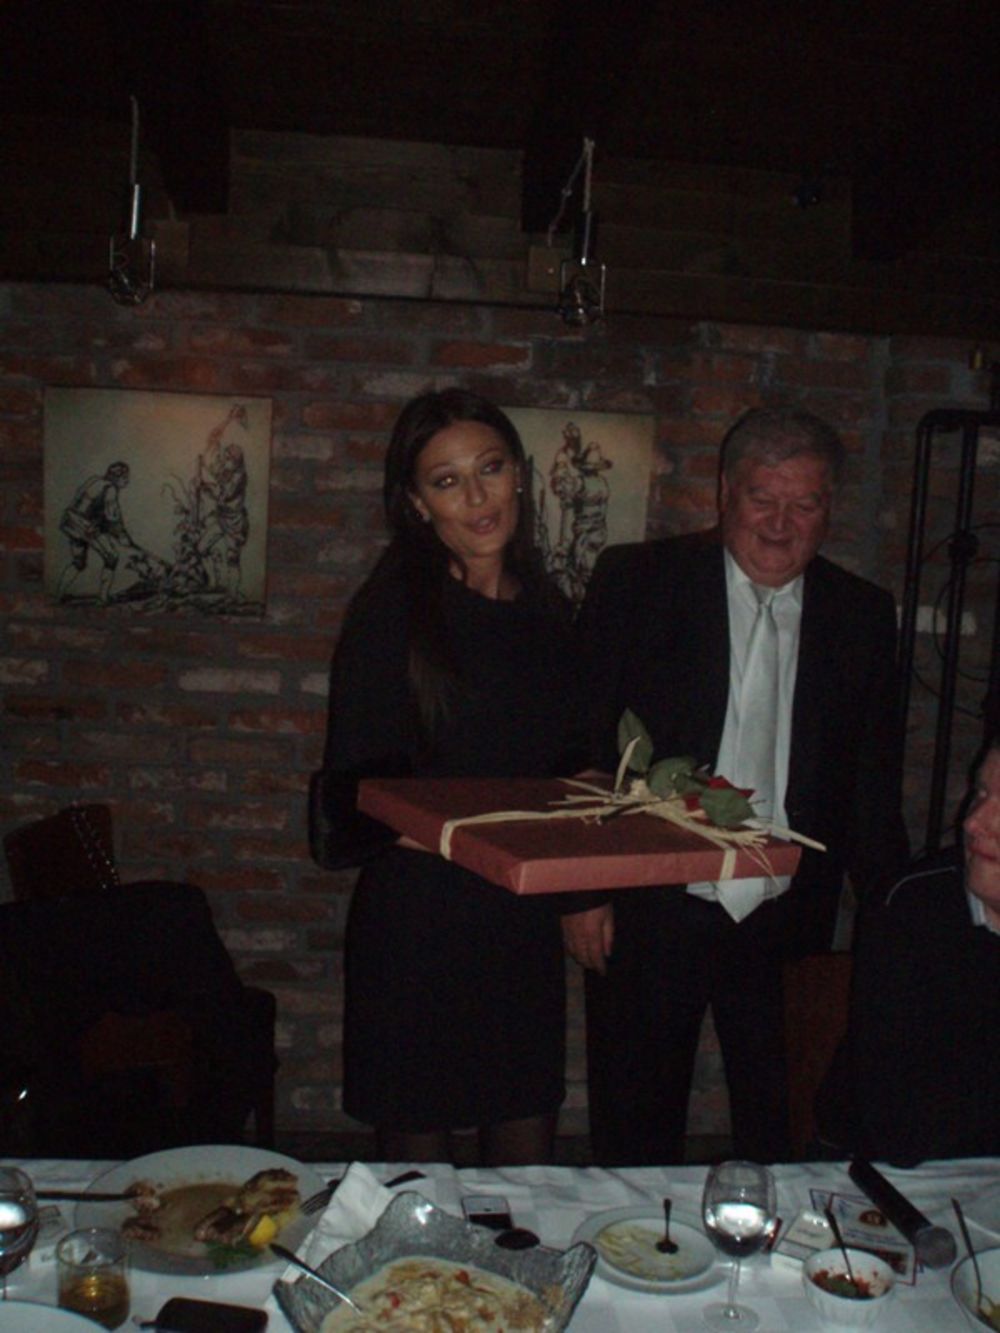 Nakon spektakularnog koncerta u skopskoj hali Boris Trajkovski, folk diva Svetlana - Ceca Ražnatović pojavila se noćas na after partyju u restoranu Vodenica gde je na poklon dobila ikonu sa drvenom podlogom na kojoj je izrezbaren lik svetog Nikole